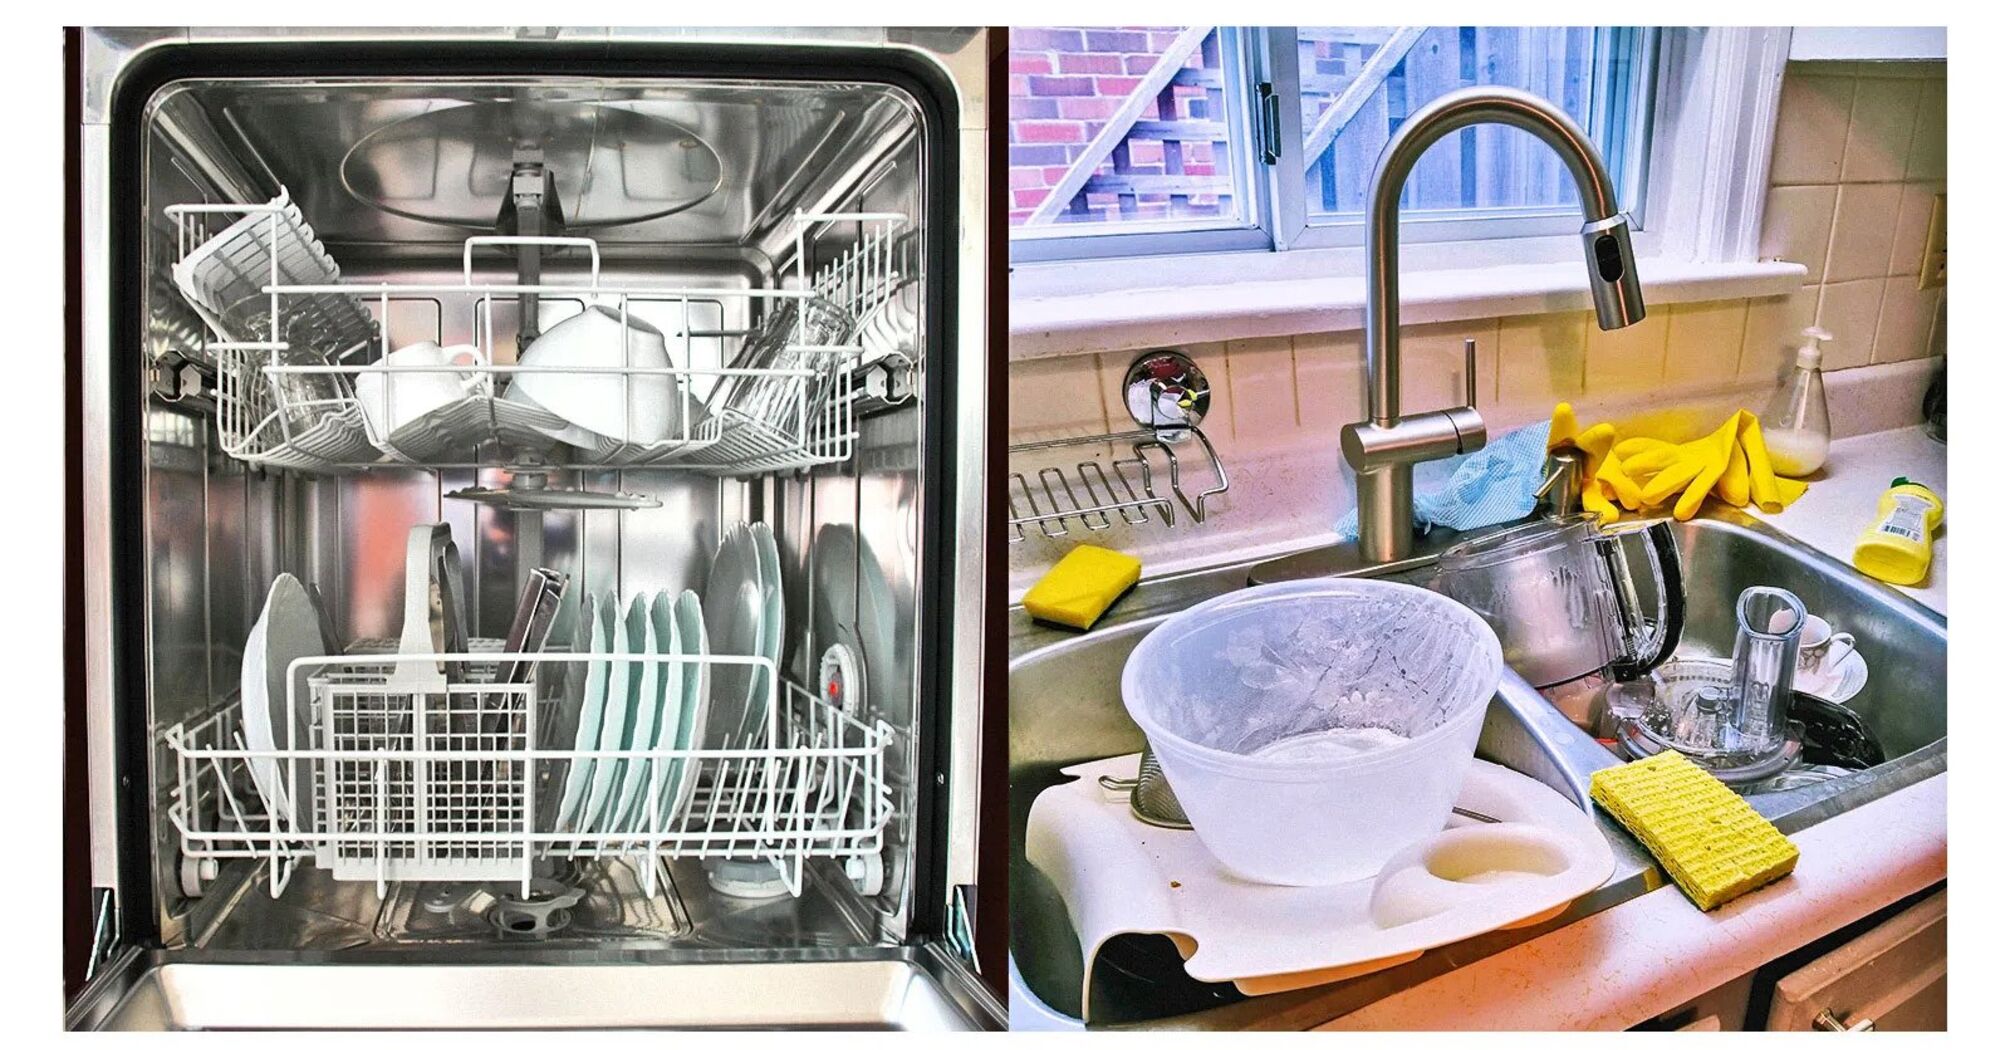 Comparison of manual dishwashing and dishwasher use